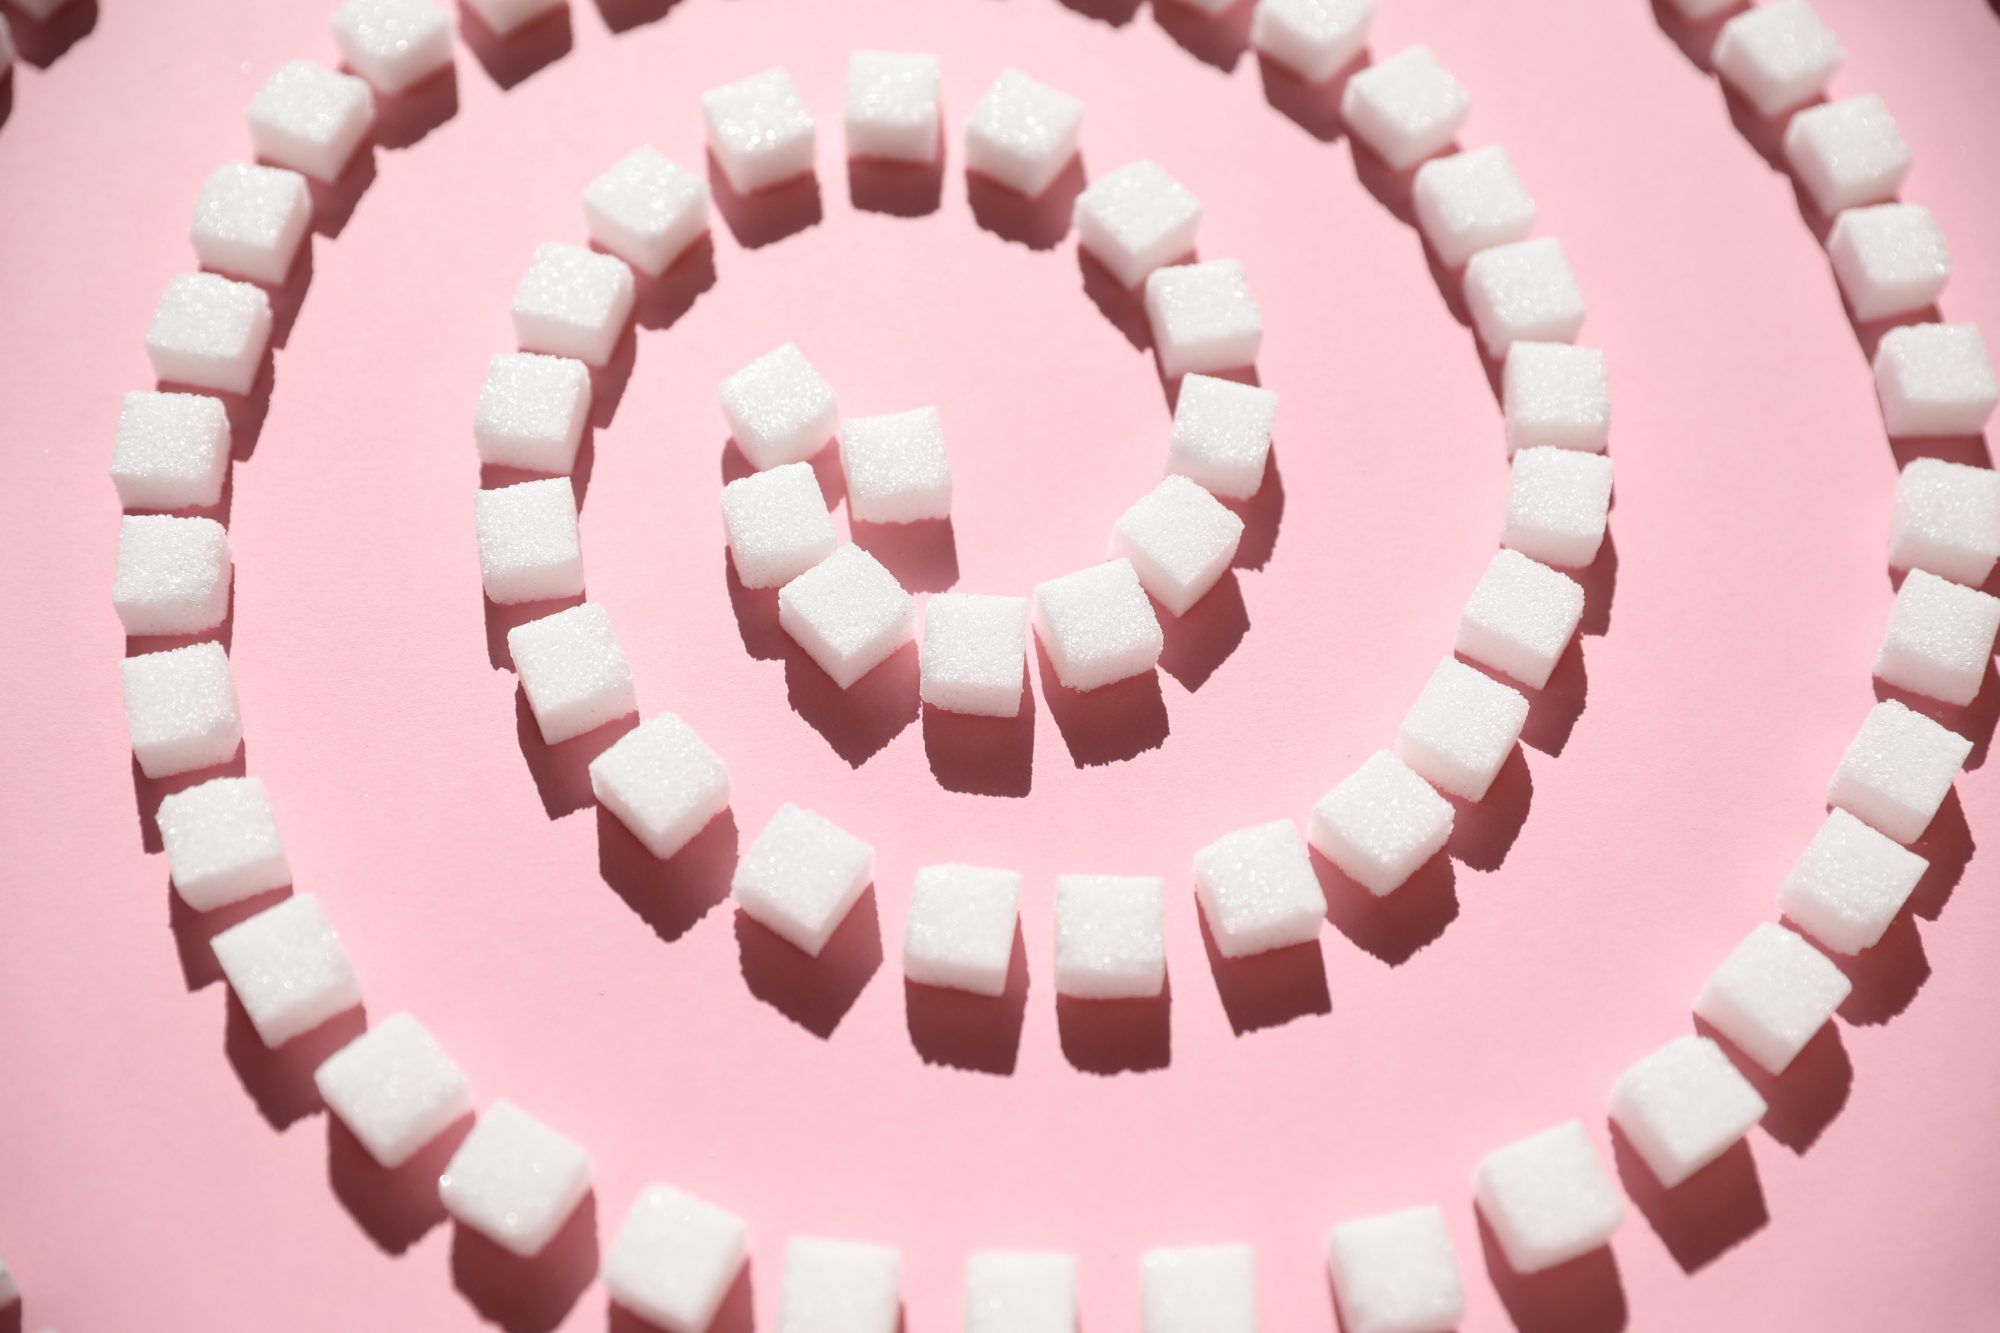 cum afectează zahărul starea de spirit: cuburi de zahăr